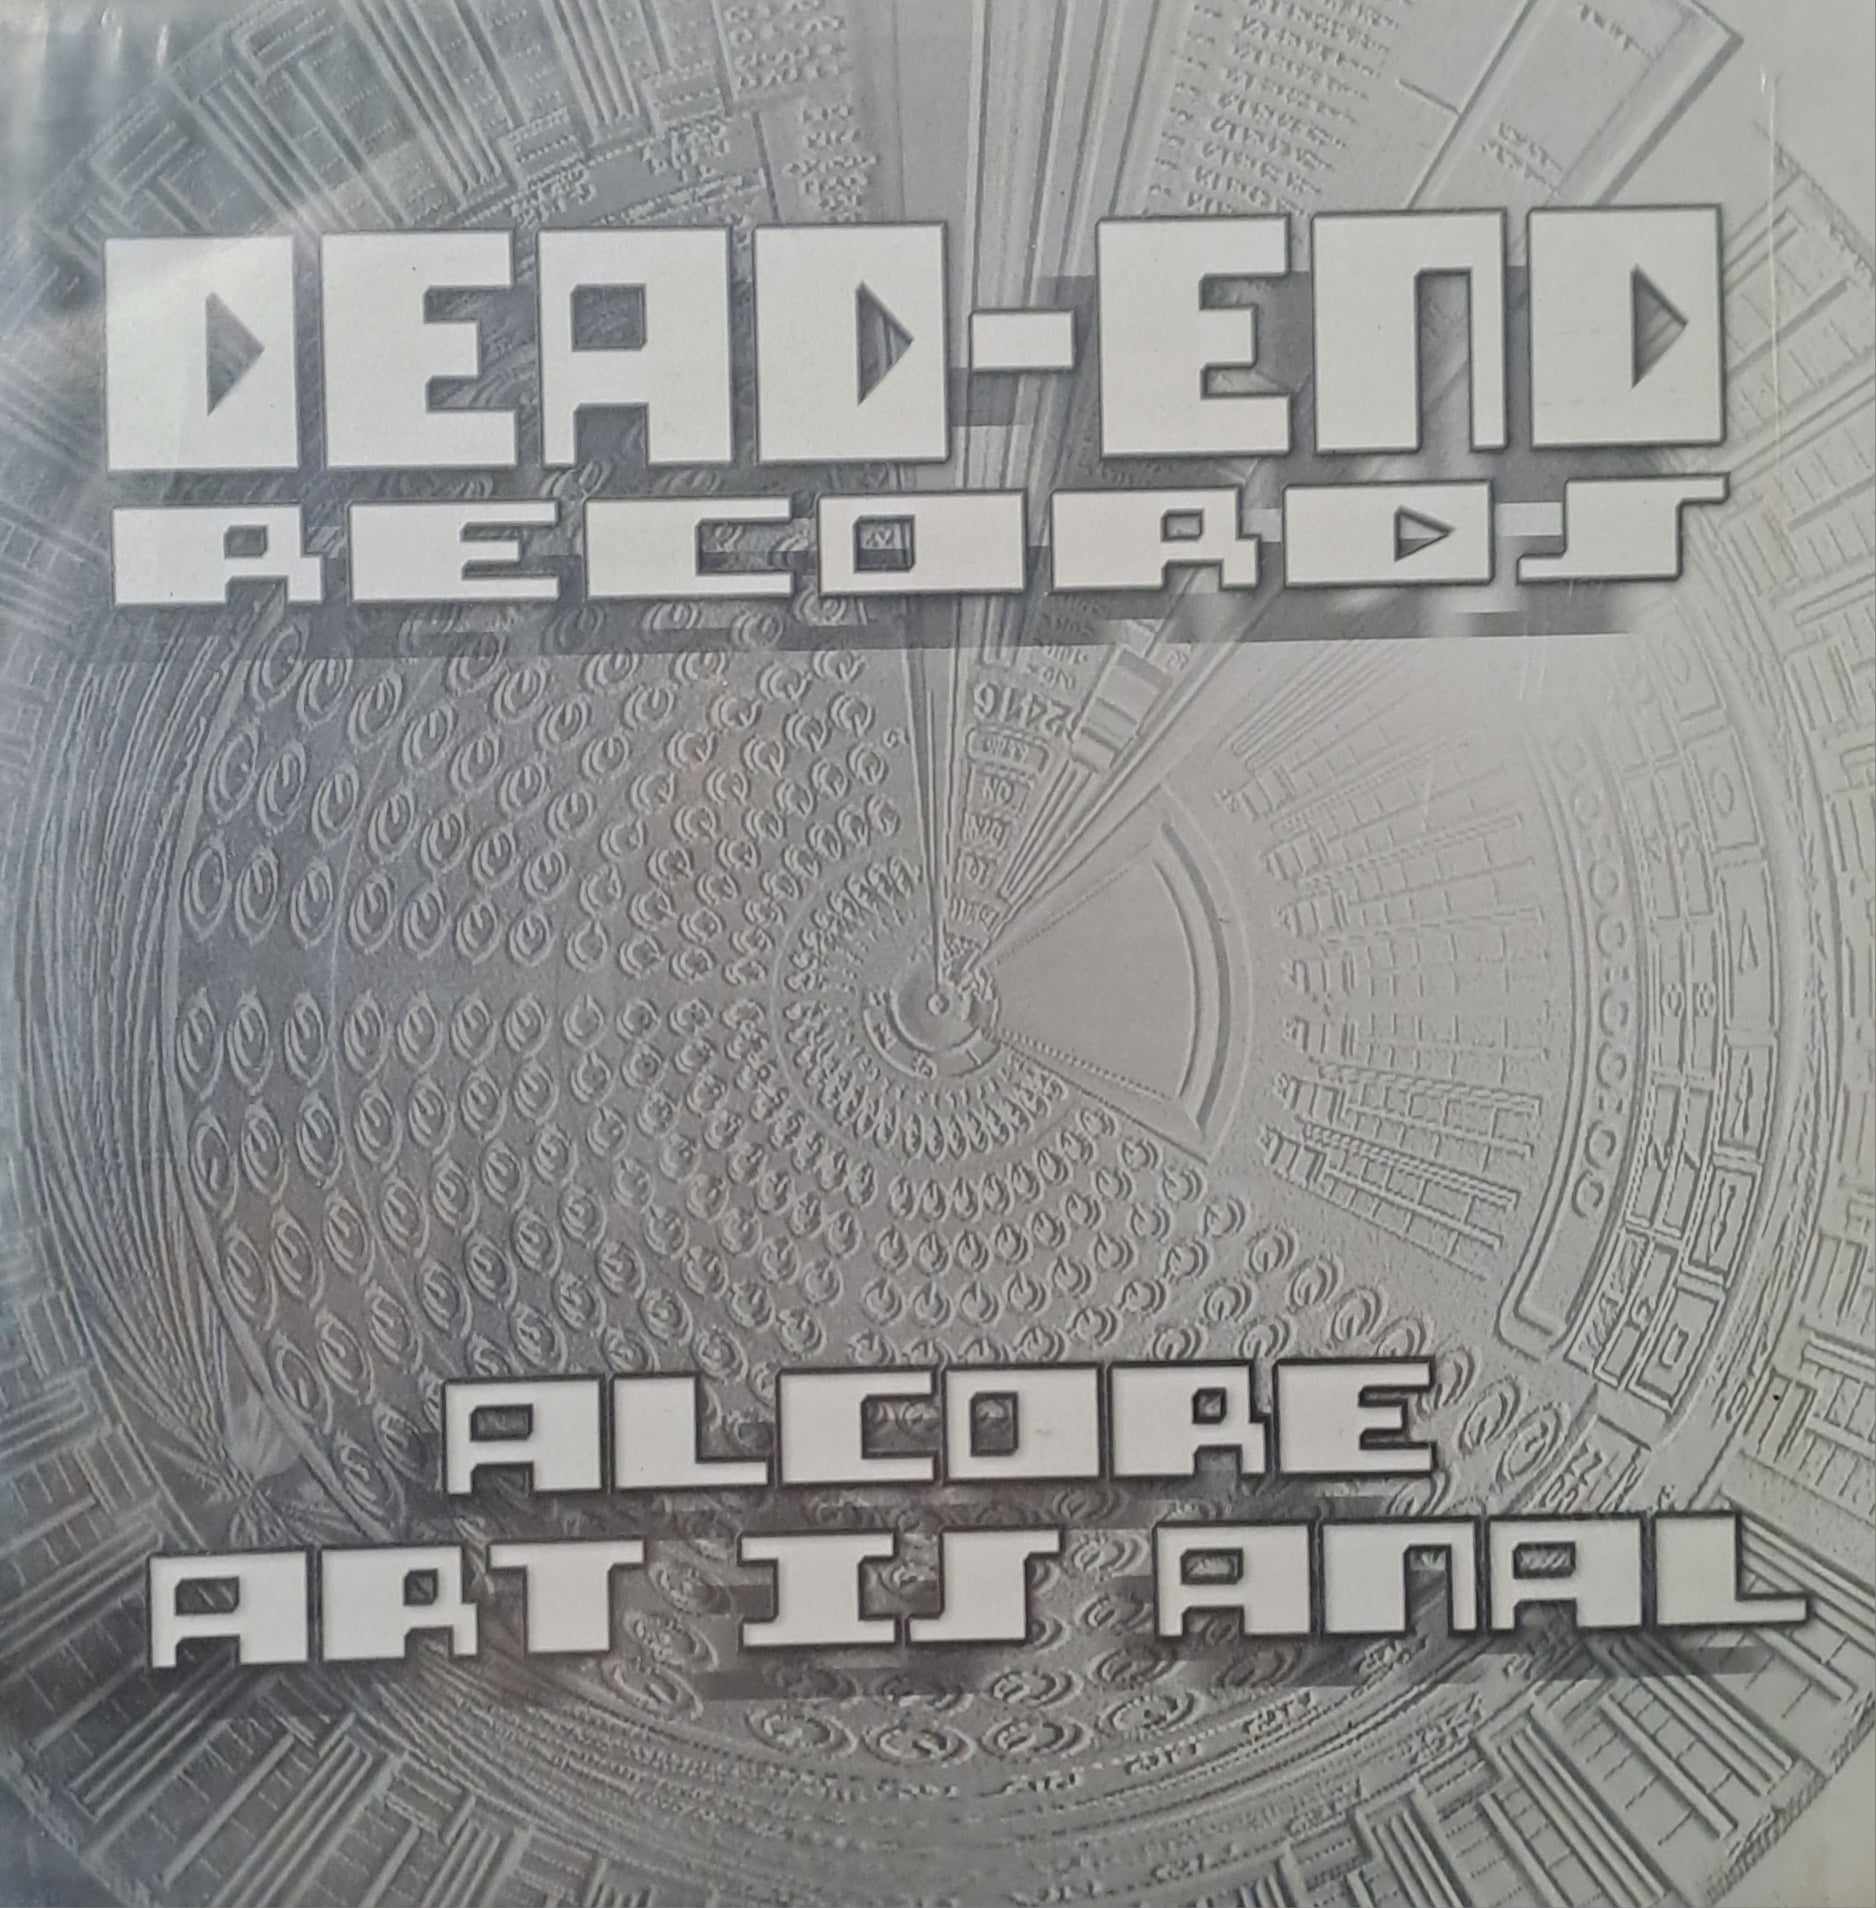 Dead End Records 12 - vinyle hardcore